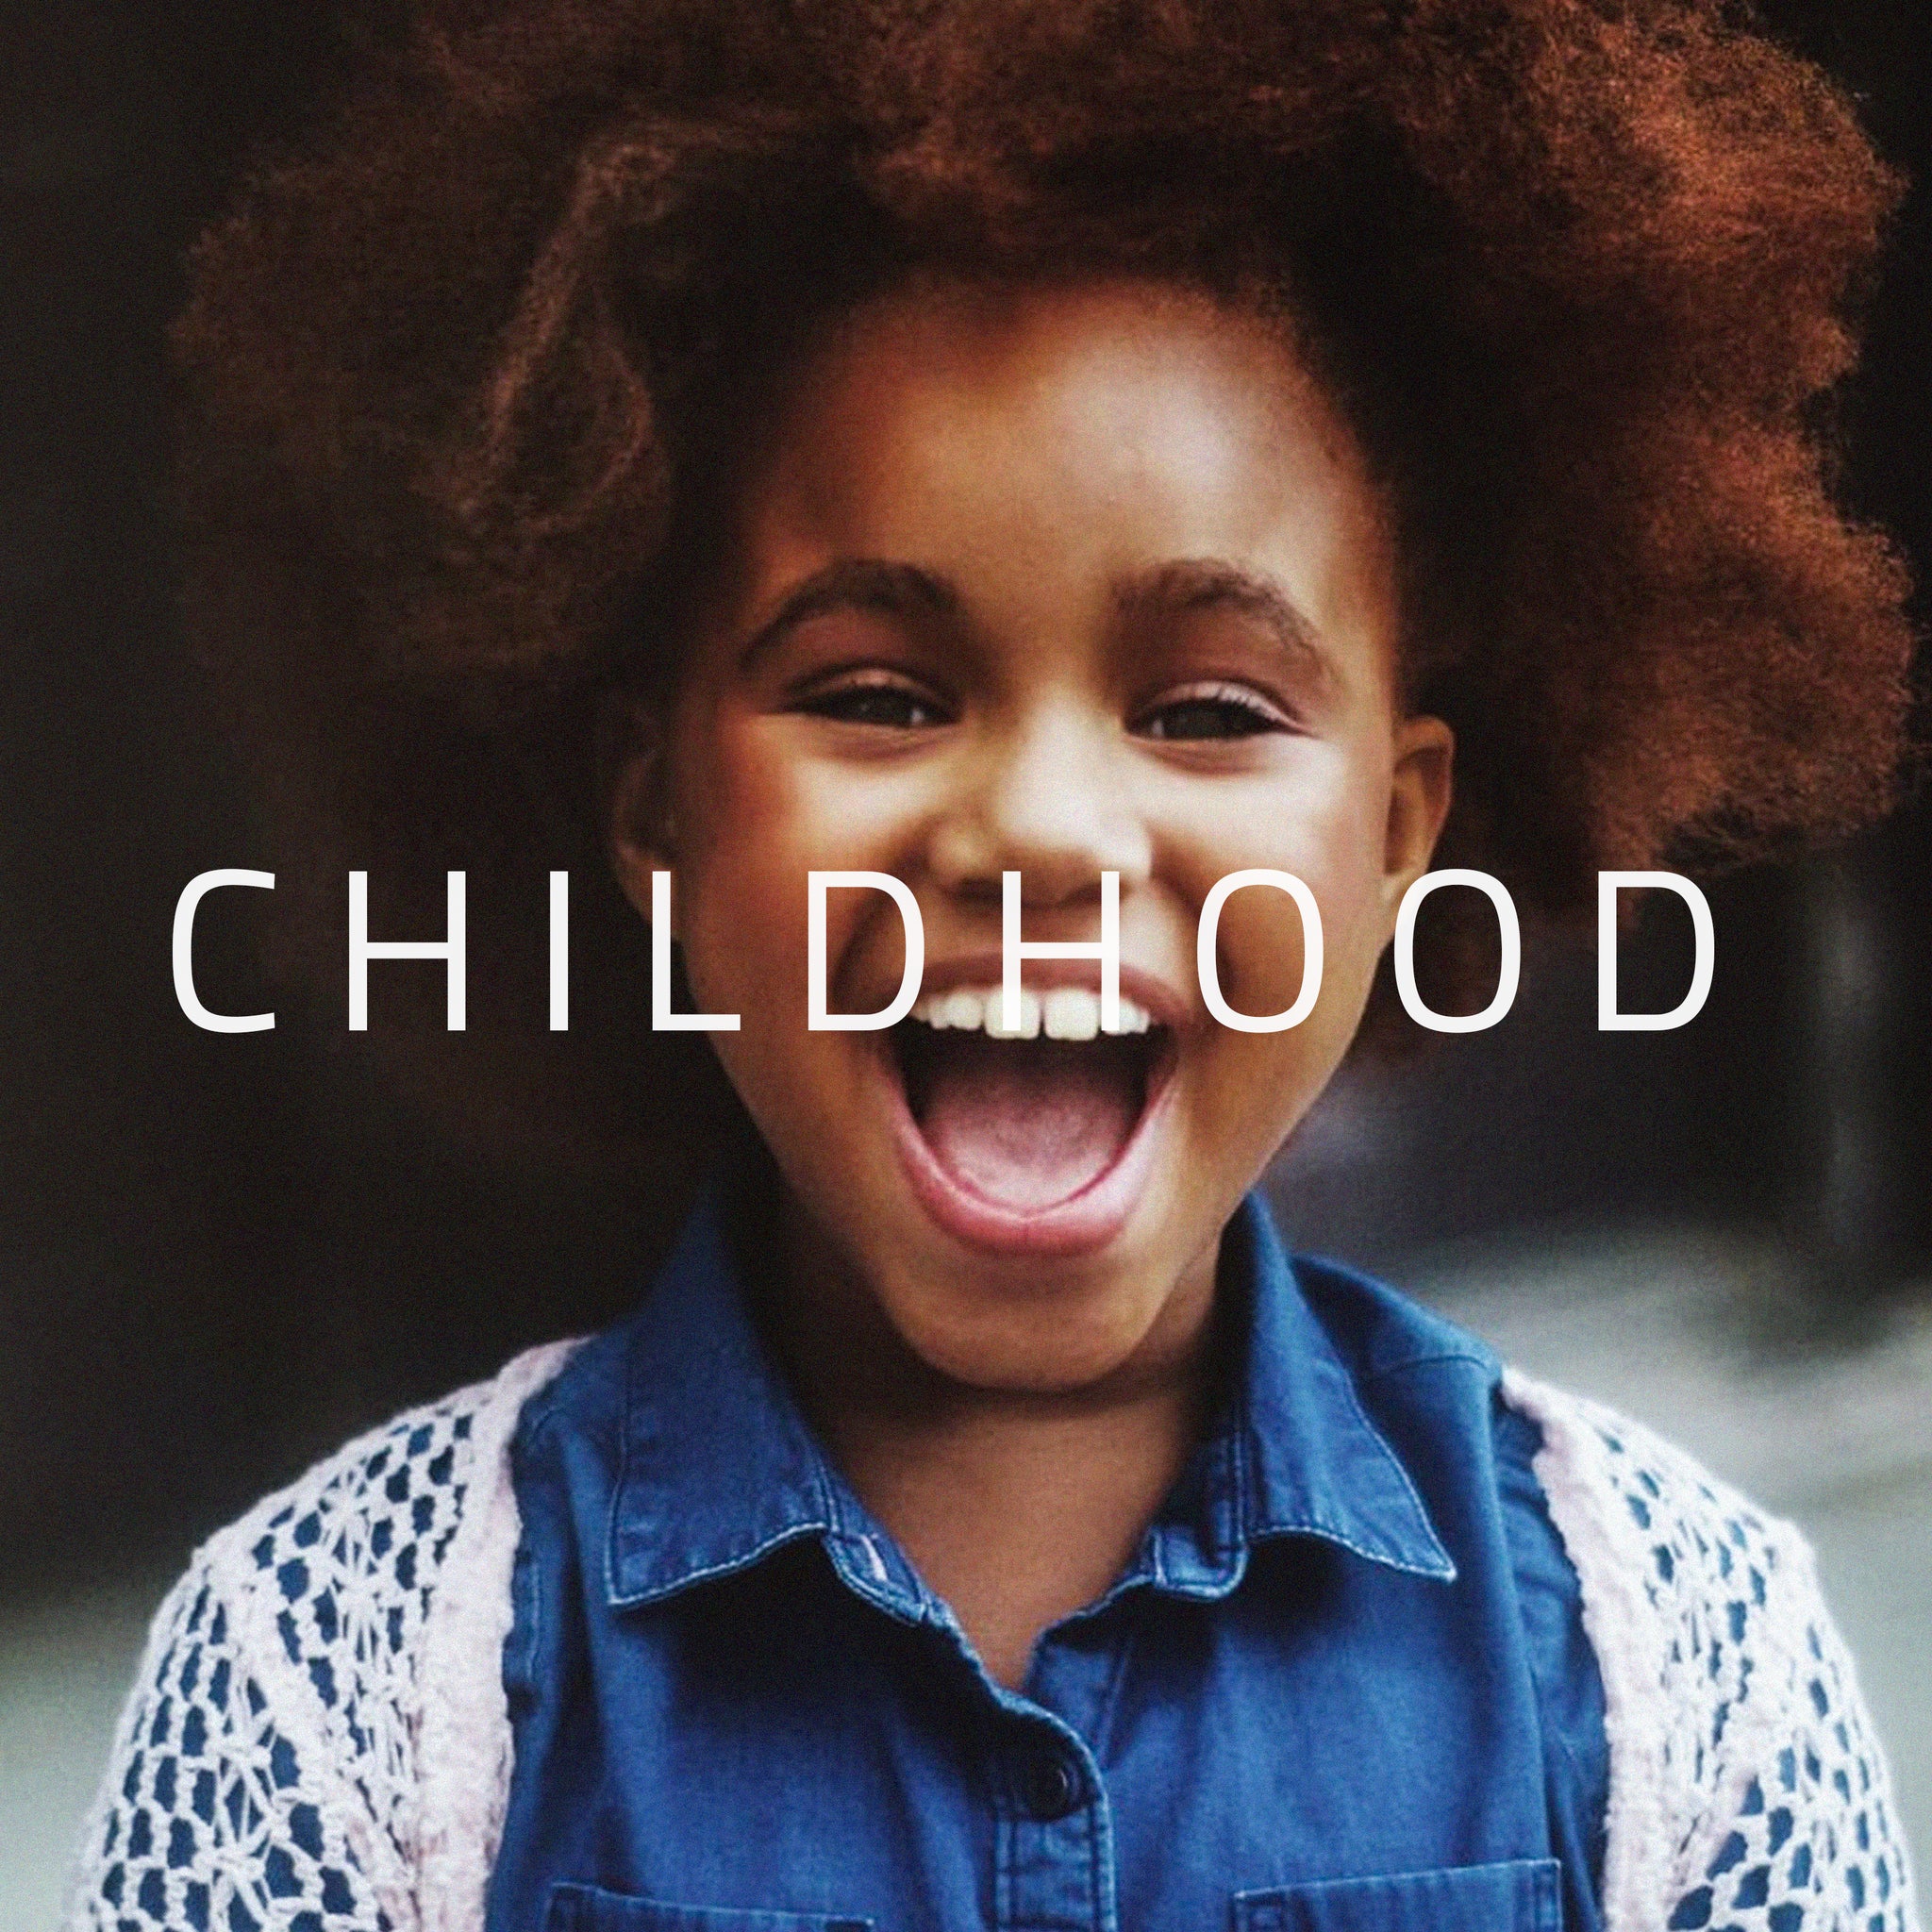 KIDSØ - Childhood (Single) - Digital Download